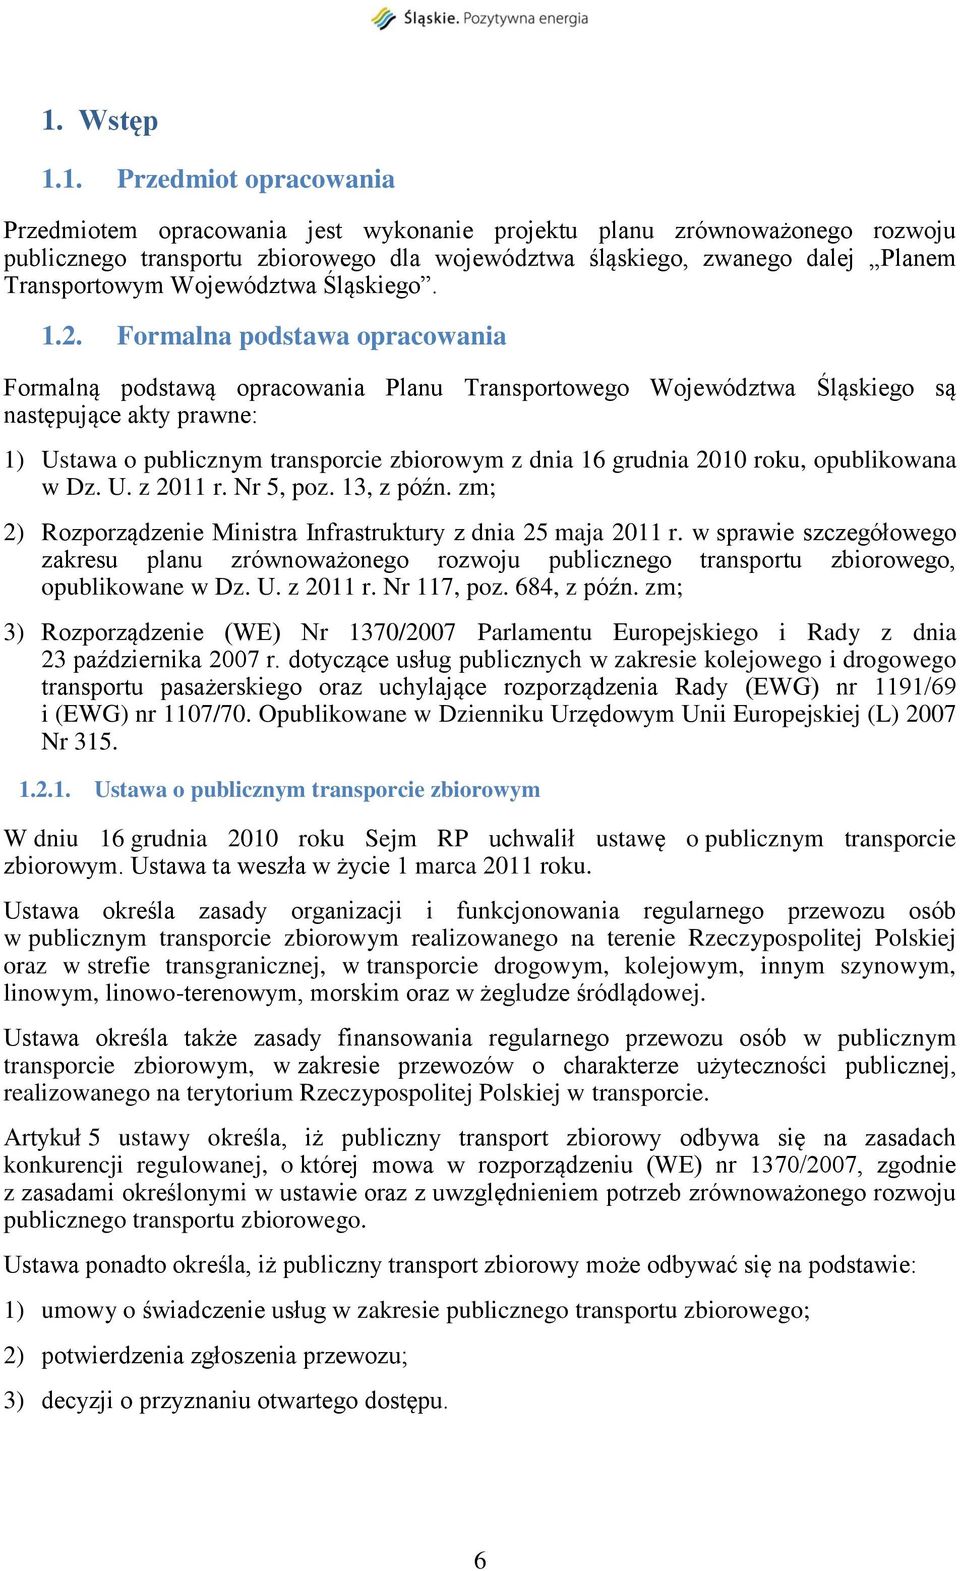 Formalna podstawa opracowania Formalną podstawą opracowania Planu Transportowego Województwa Śląskiego są następujące akty prawne: 1) Ustawa o publicznym transporcie zbiorowym z dnia 16 grudnia 2010